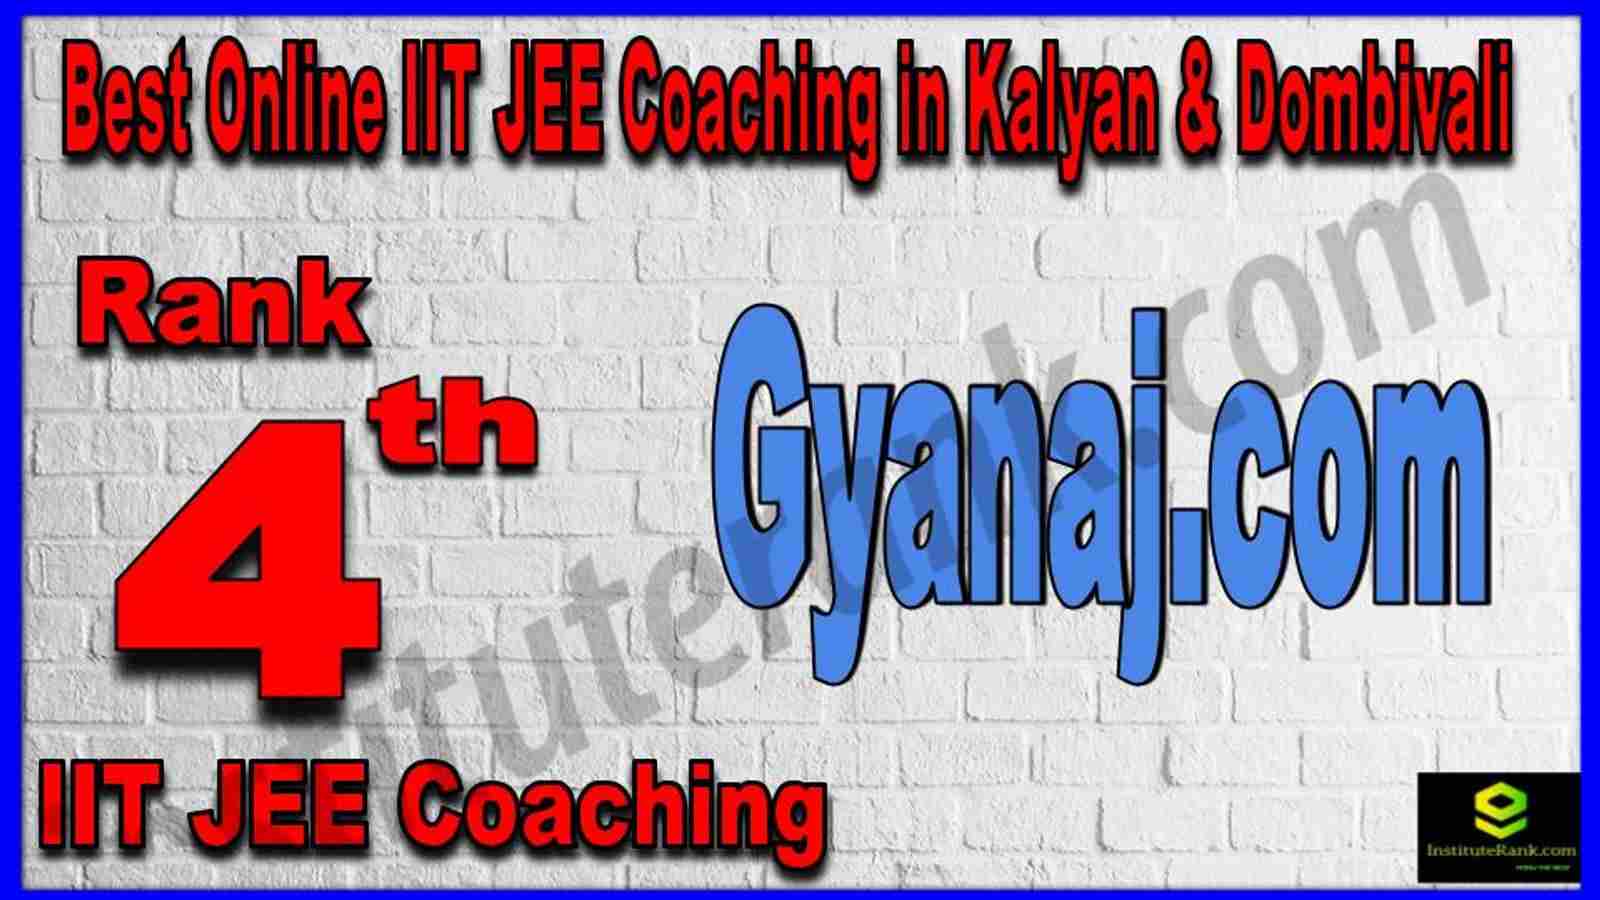 Rank 4th Best Online IIT JEE Coaching in Kalyan & Dombivali 